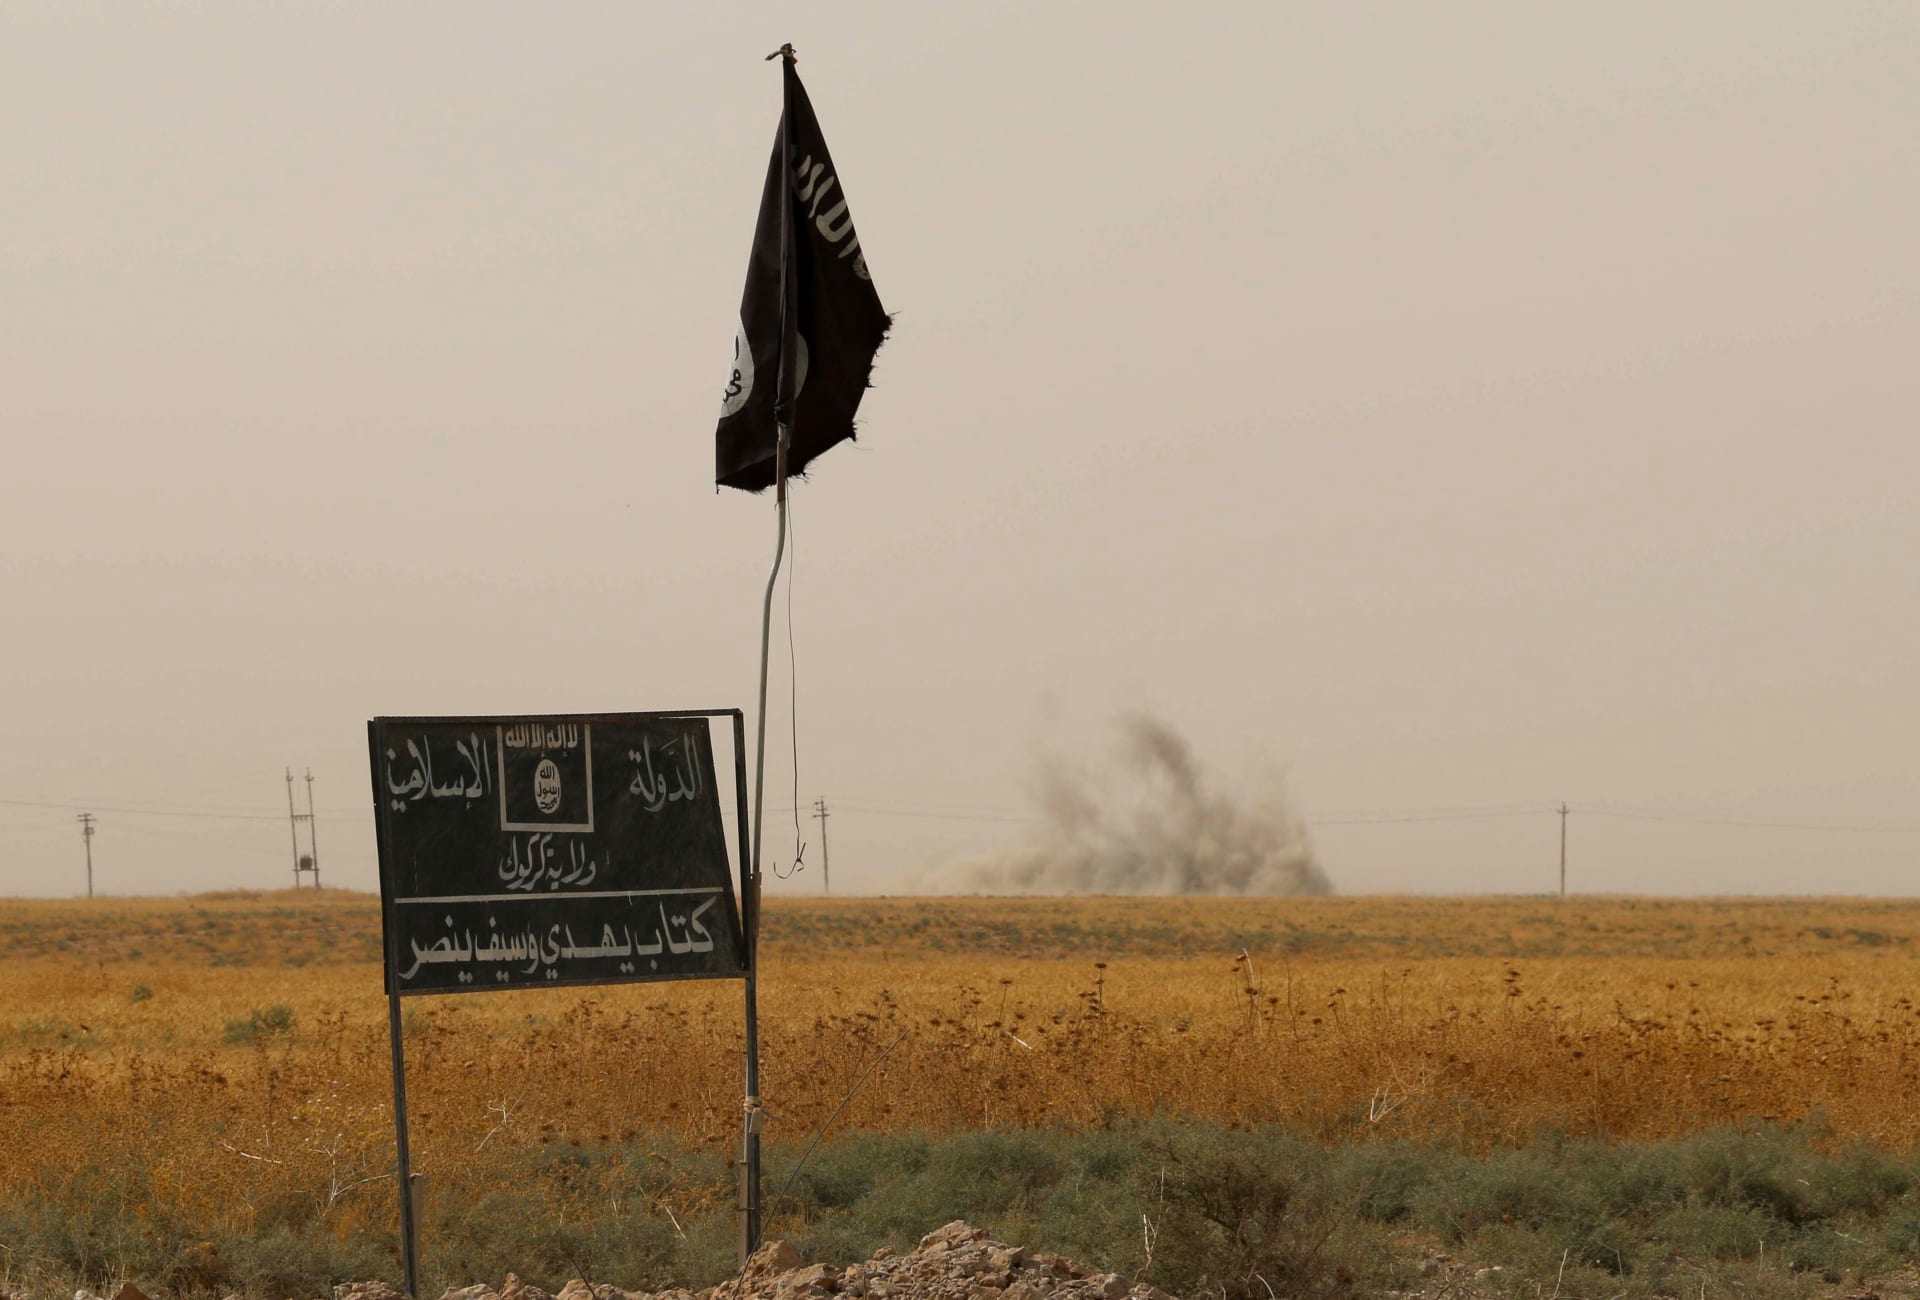 فنلندا: حكم بسجن طالب لجوء عراقي نشر صوره إلى جانب رأس عنصر من داعش